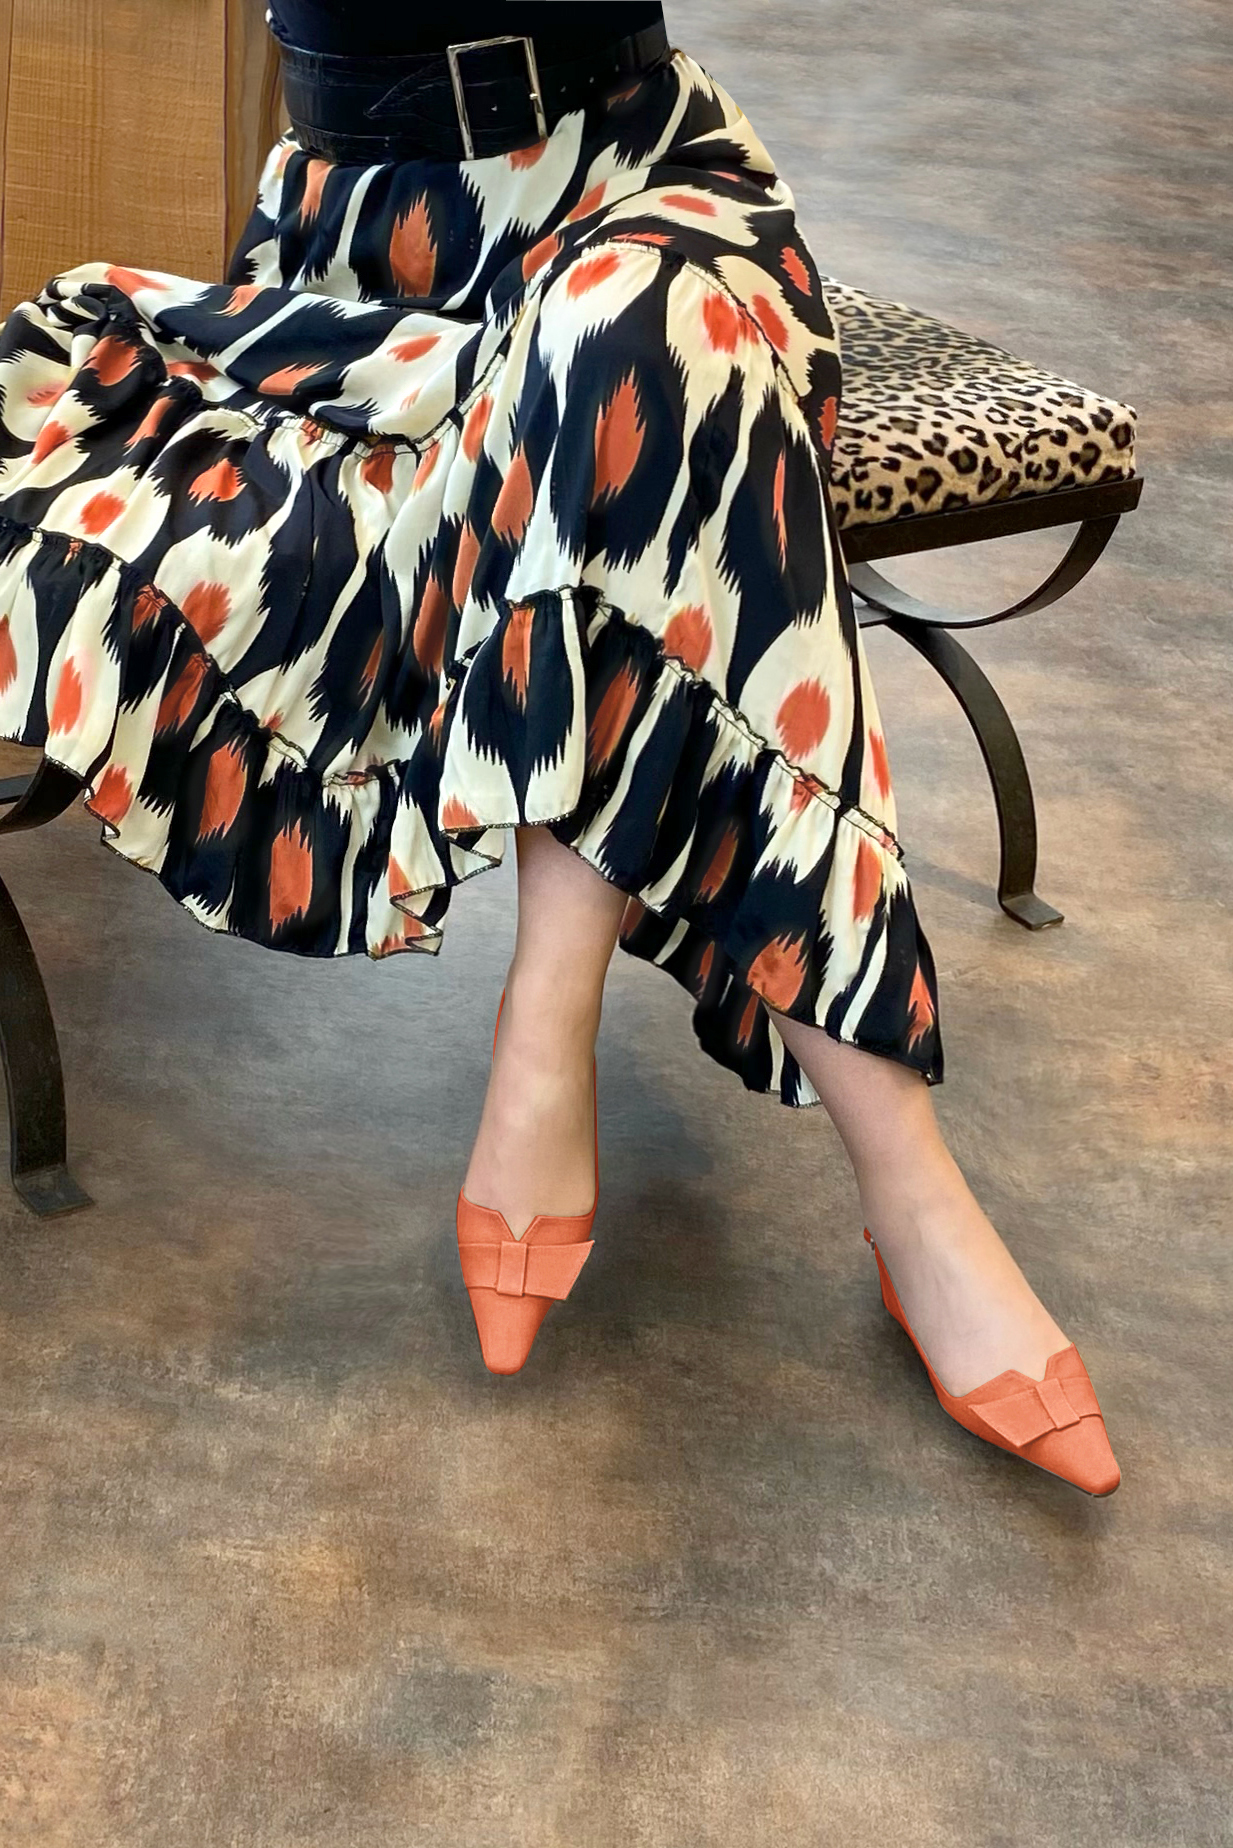 Chaussure femme à brides :  couleur orange pêche. Bout effilé. Petit talon bottier. Vue porté - Florence KOOIJMAN